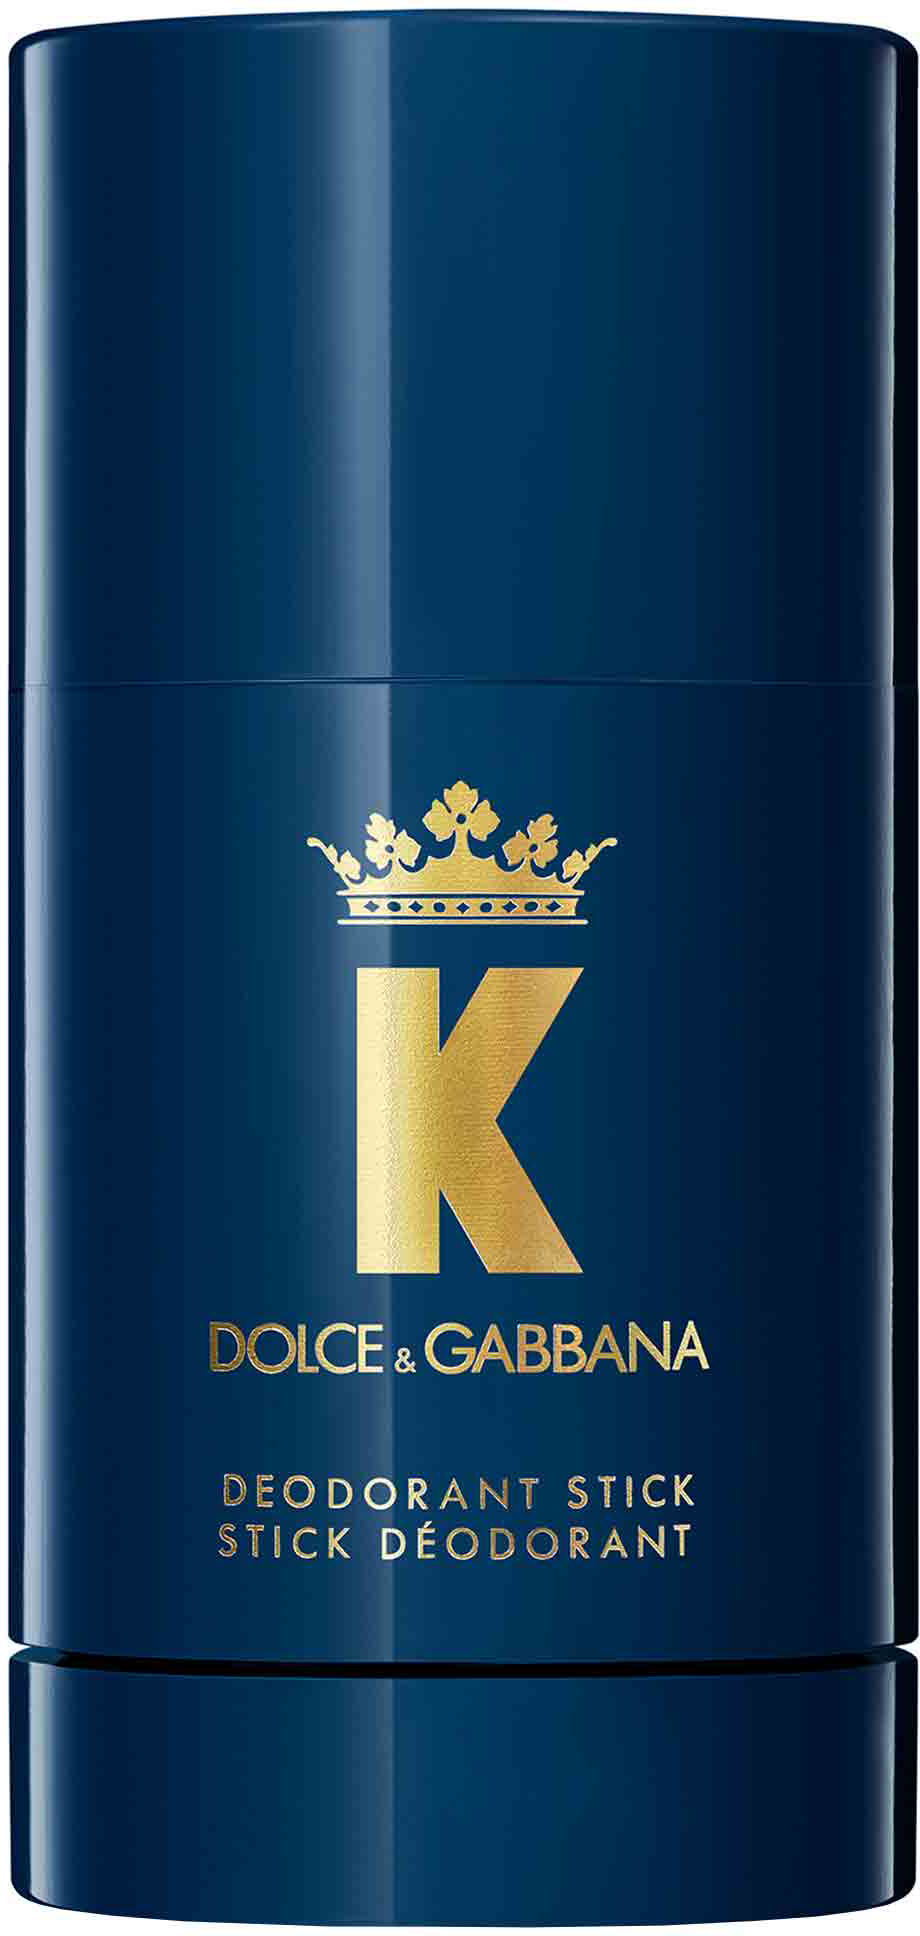 Dolce & Gabbana Light Blue D&G Eau Intense Pour Homme 100 ml